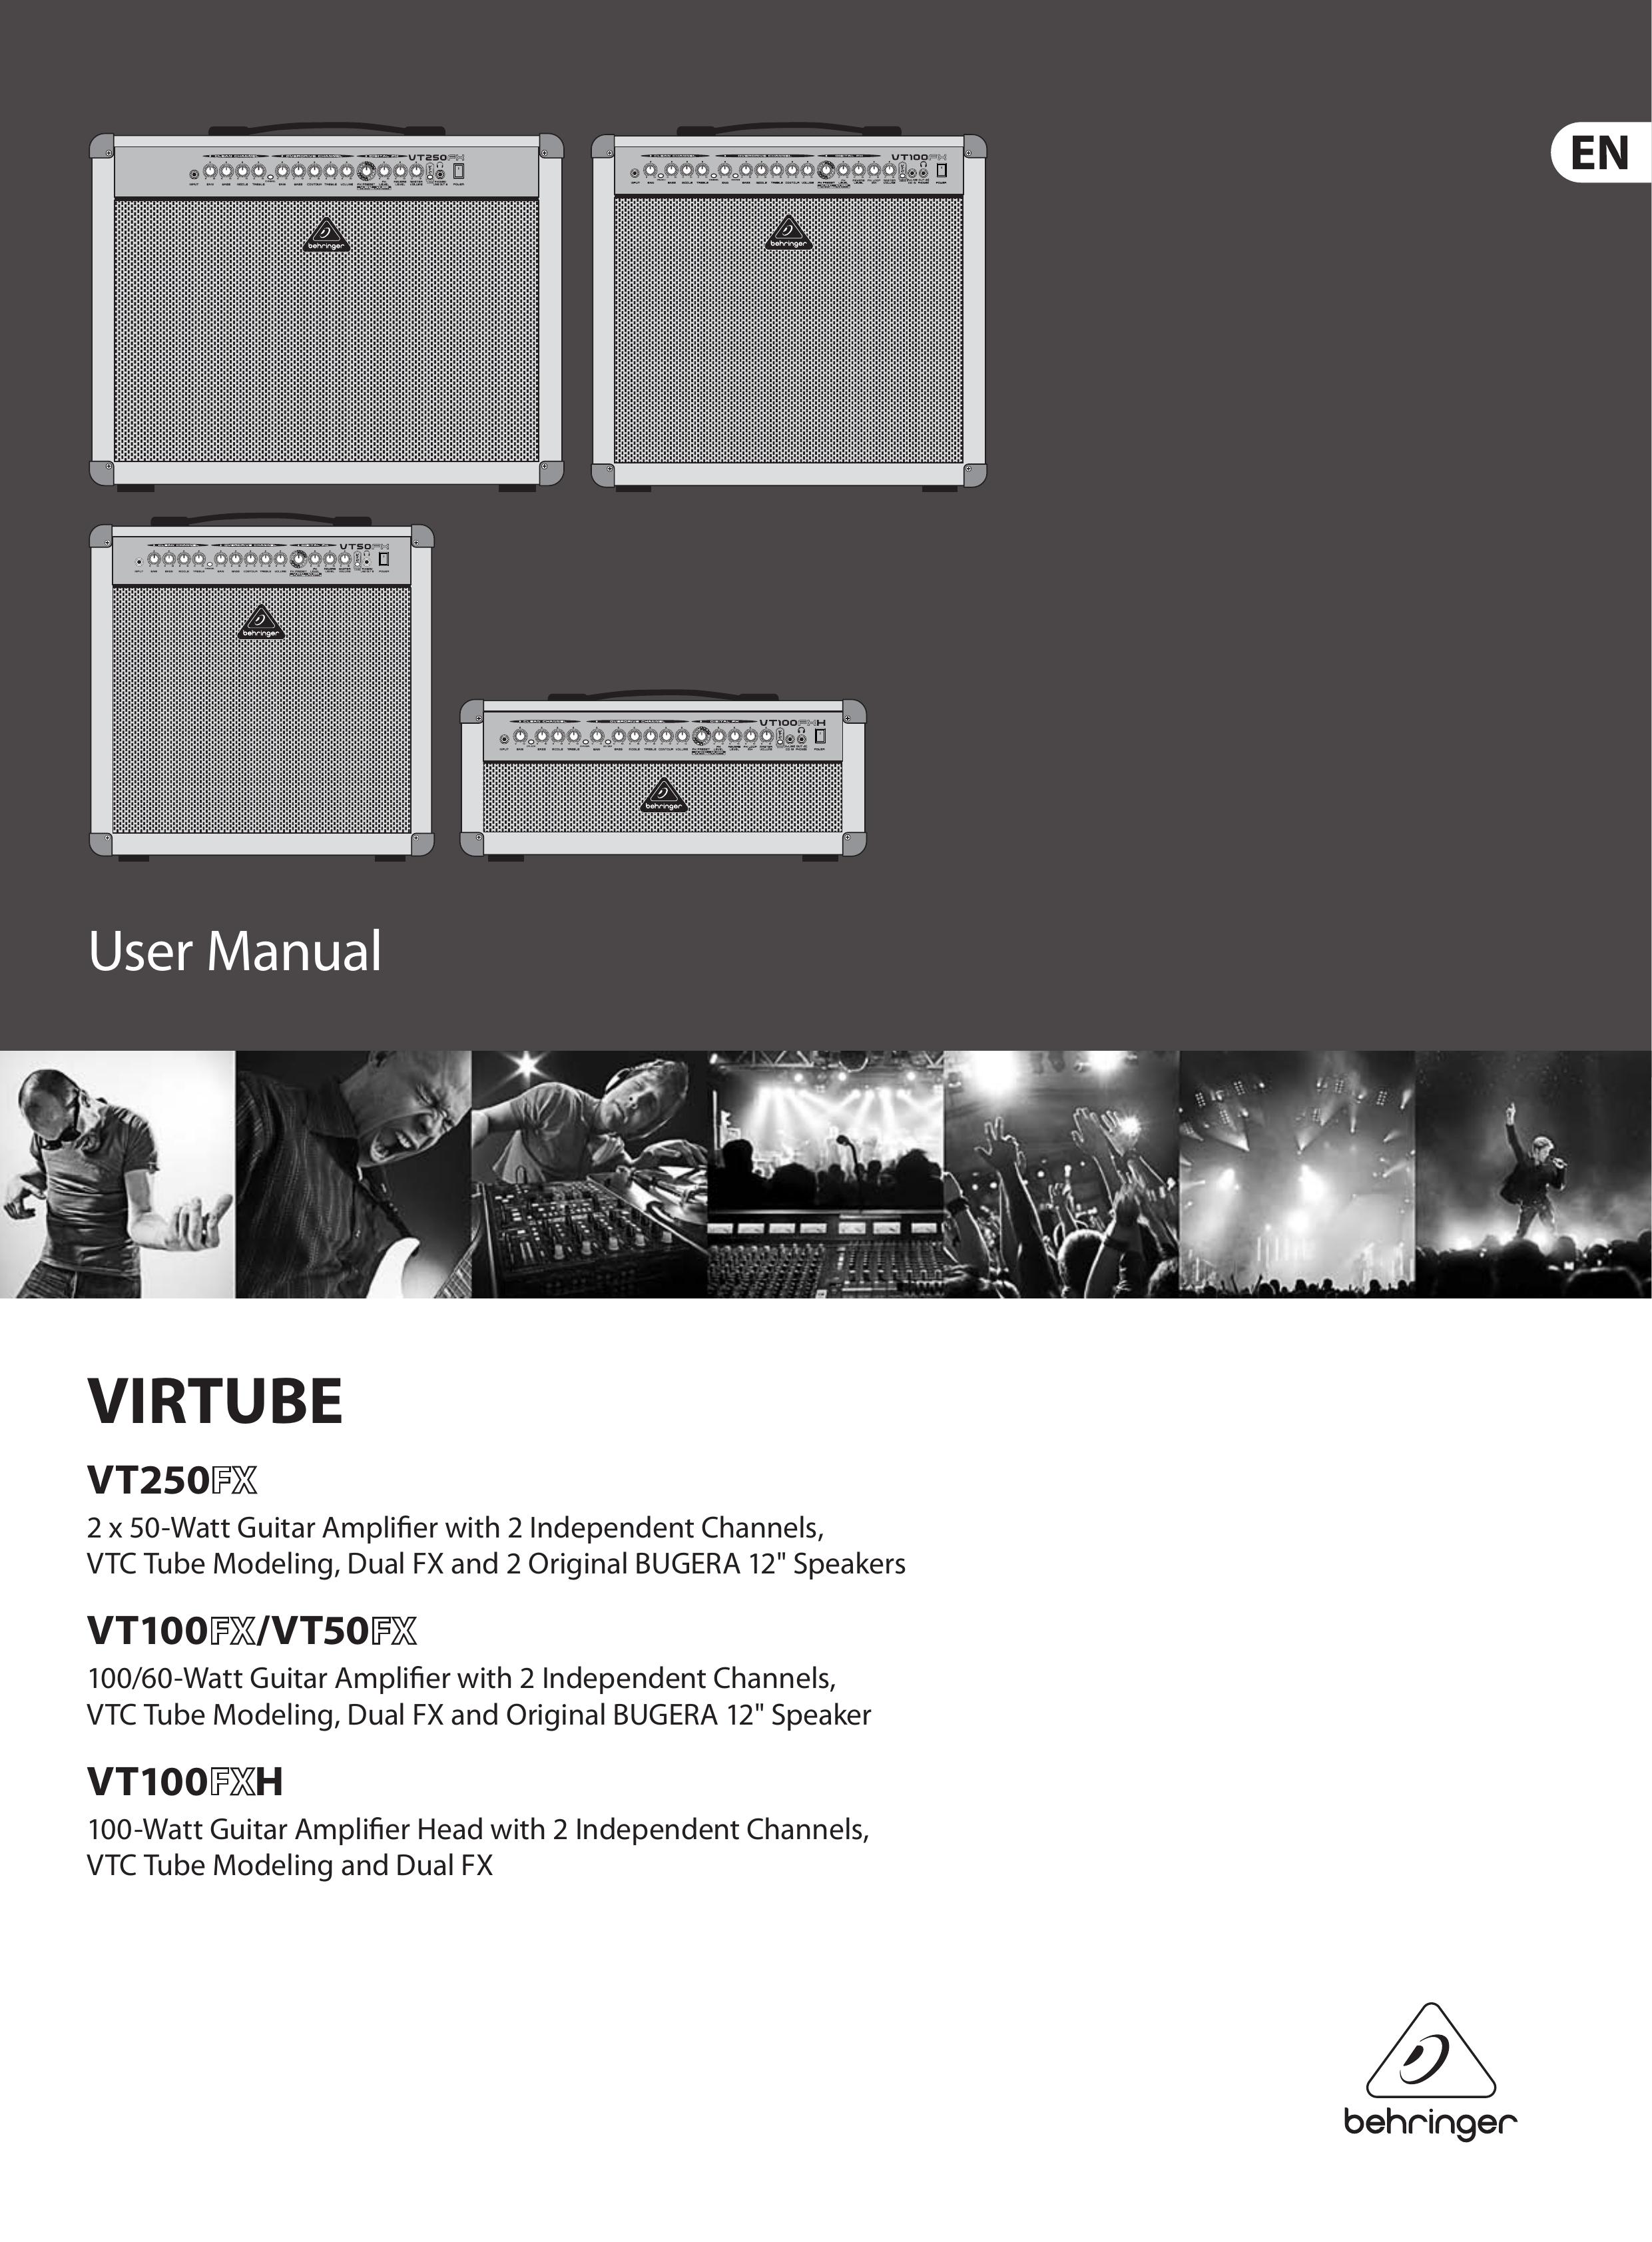 Behringer FX/VT50 Musical Instrument Amplifier User Manual